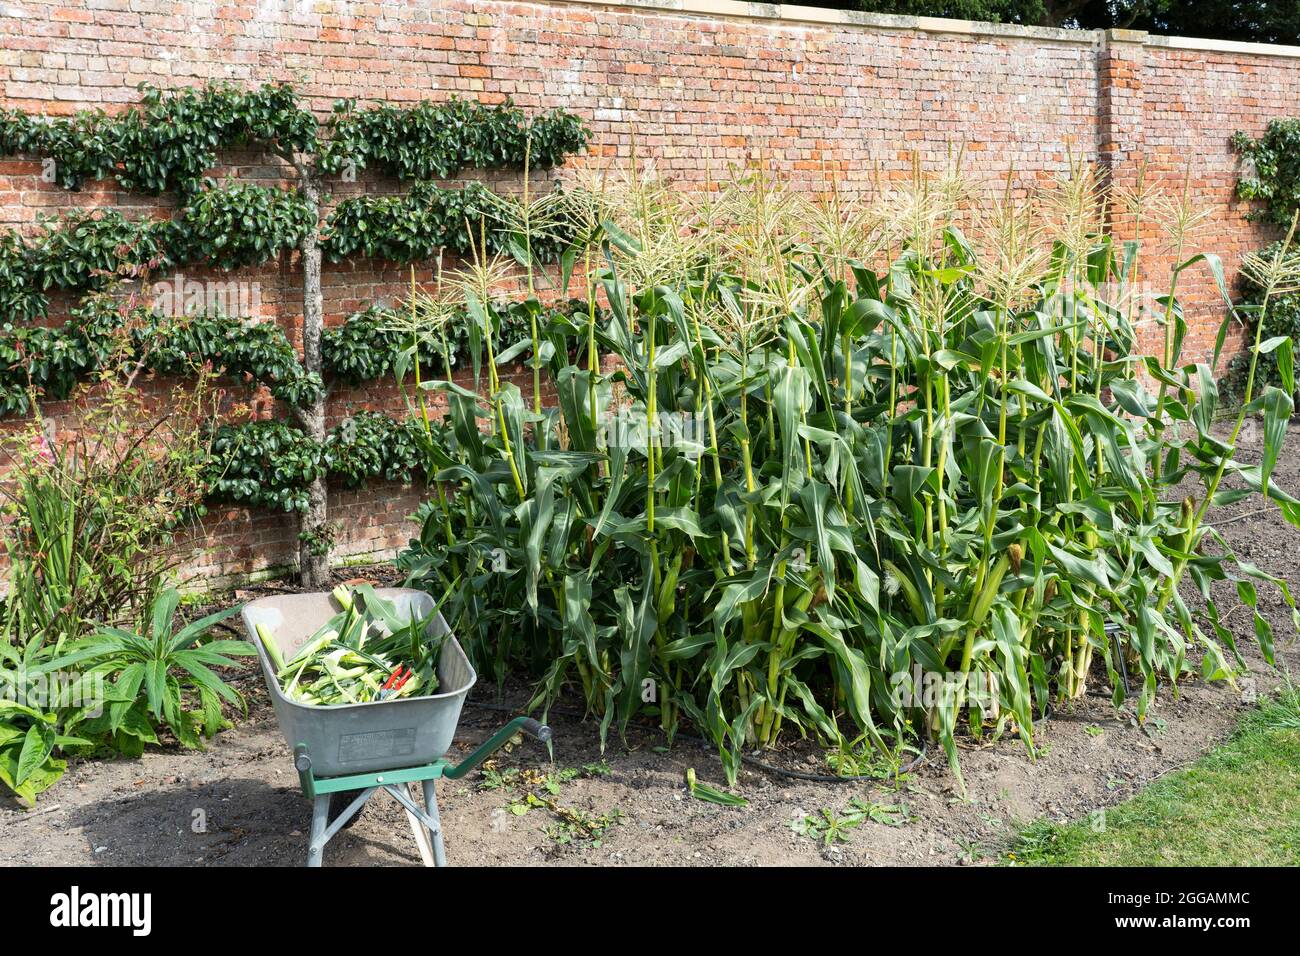 RHS Sweet Corn Goldcrest F1 stocchi che crescono negli storici Georgian Walled Gardens a Croome Court, con raccolti di pannocchie di mais in una carriola. REGNO UNITO Foto Stock